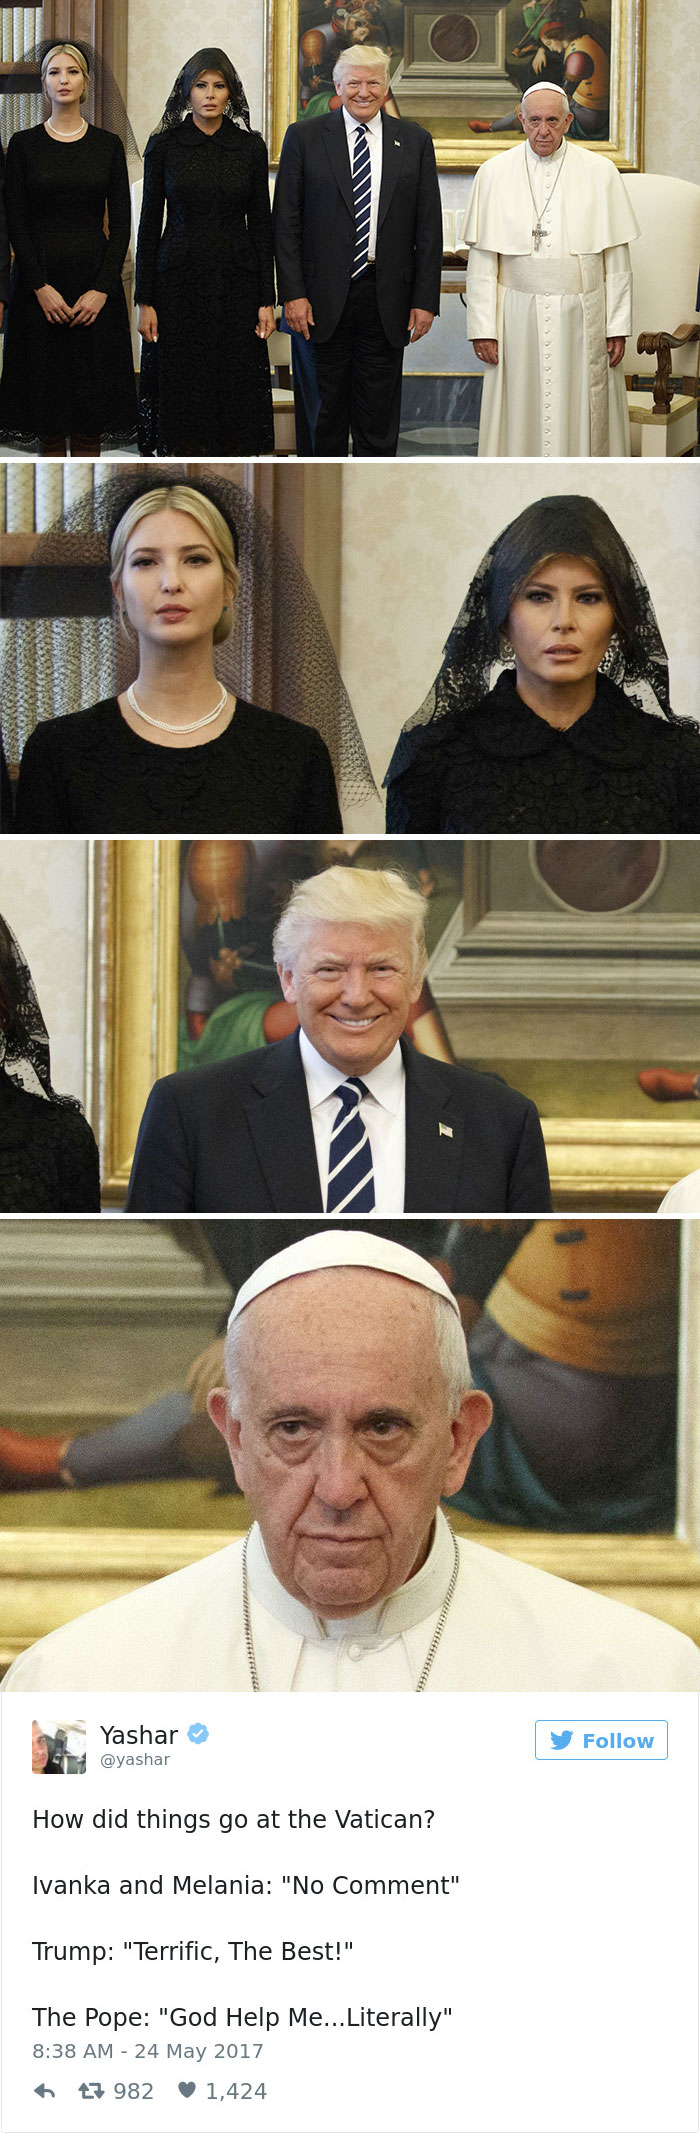 donald-trump-pope-francis-memes-10-5926902ccec00__700